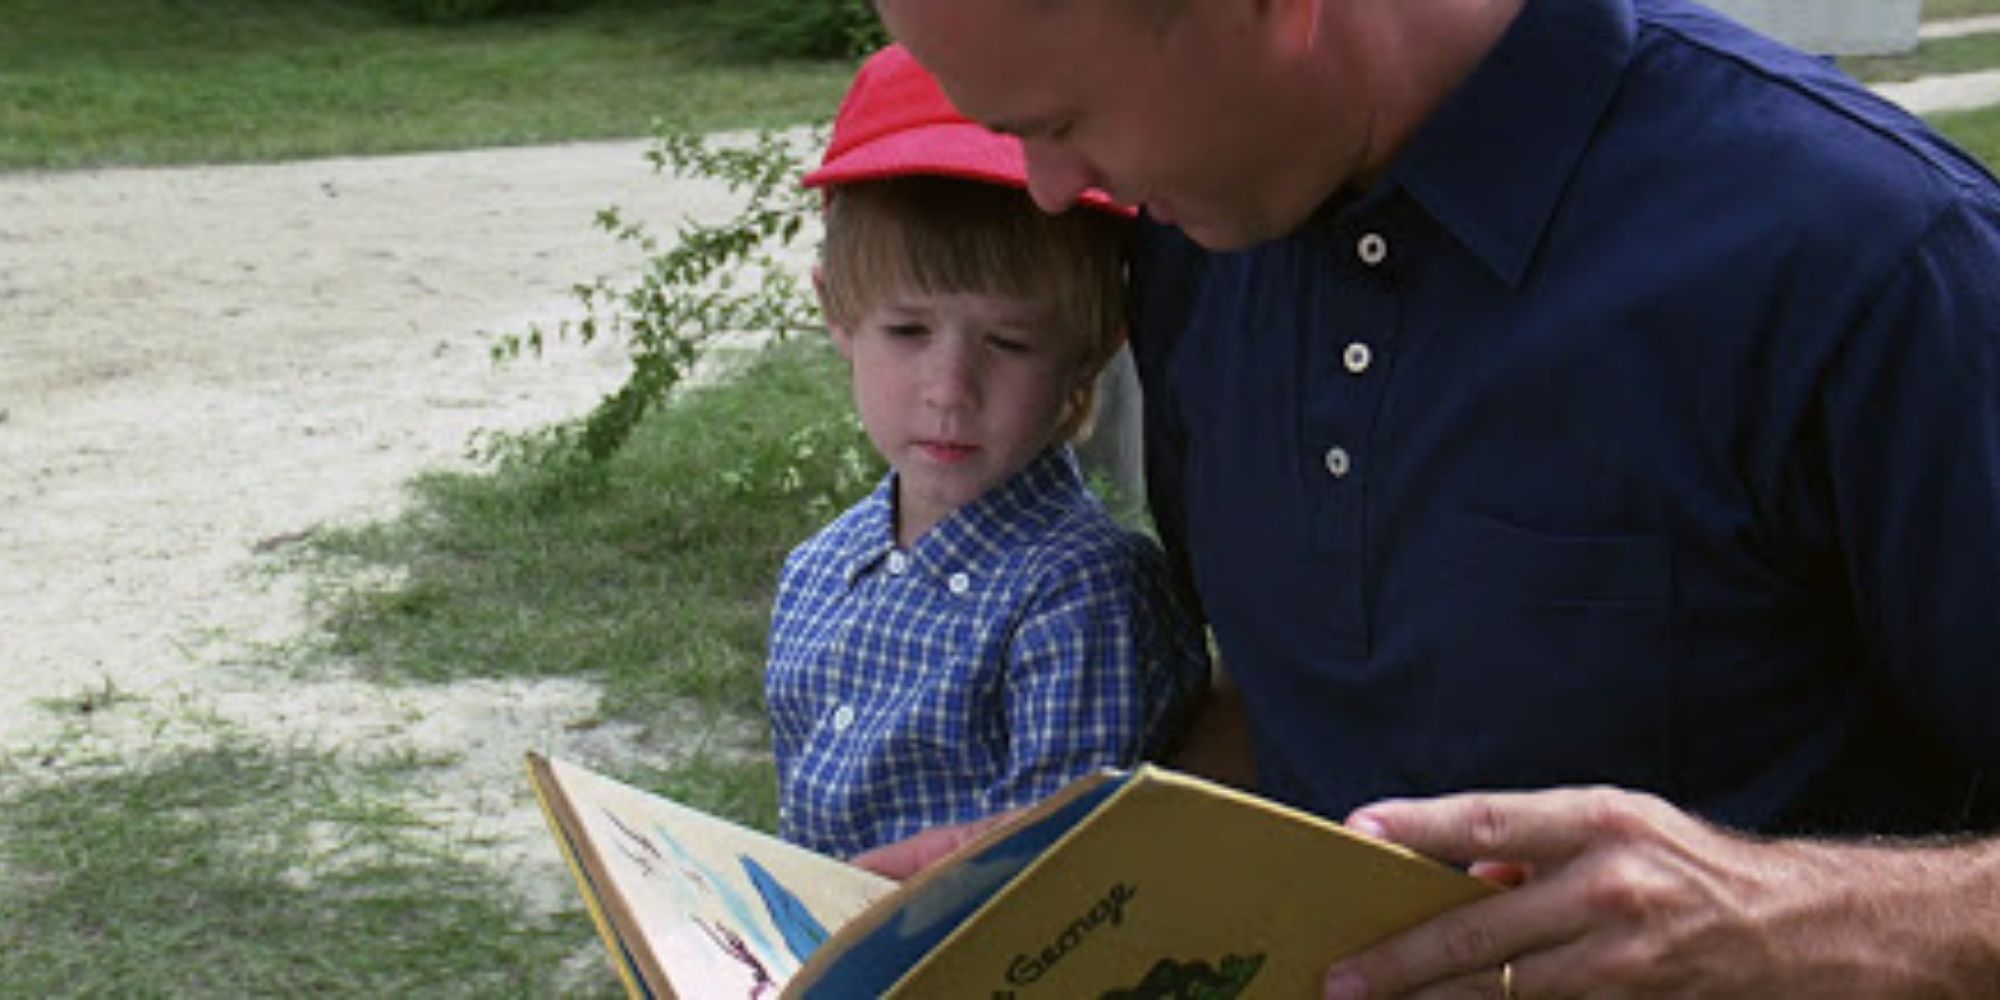 Forrest Gump Forrest Gump reads a book to Forrest Jr. outside.